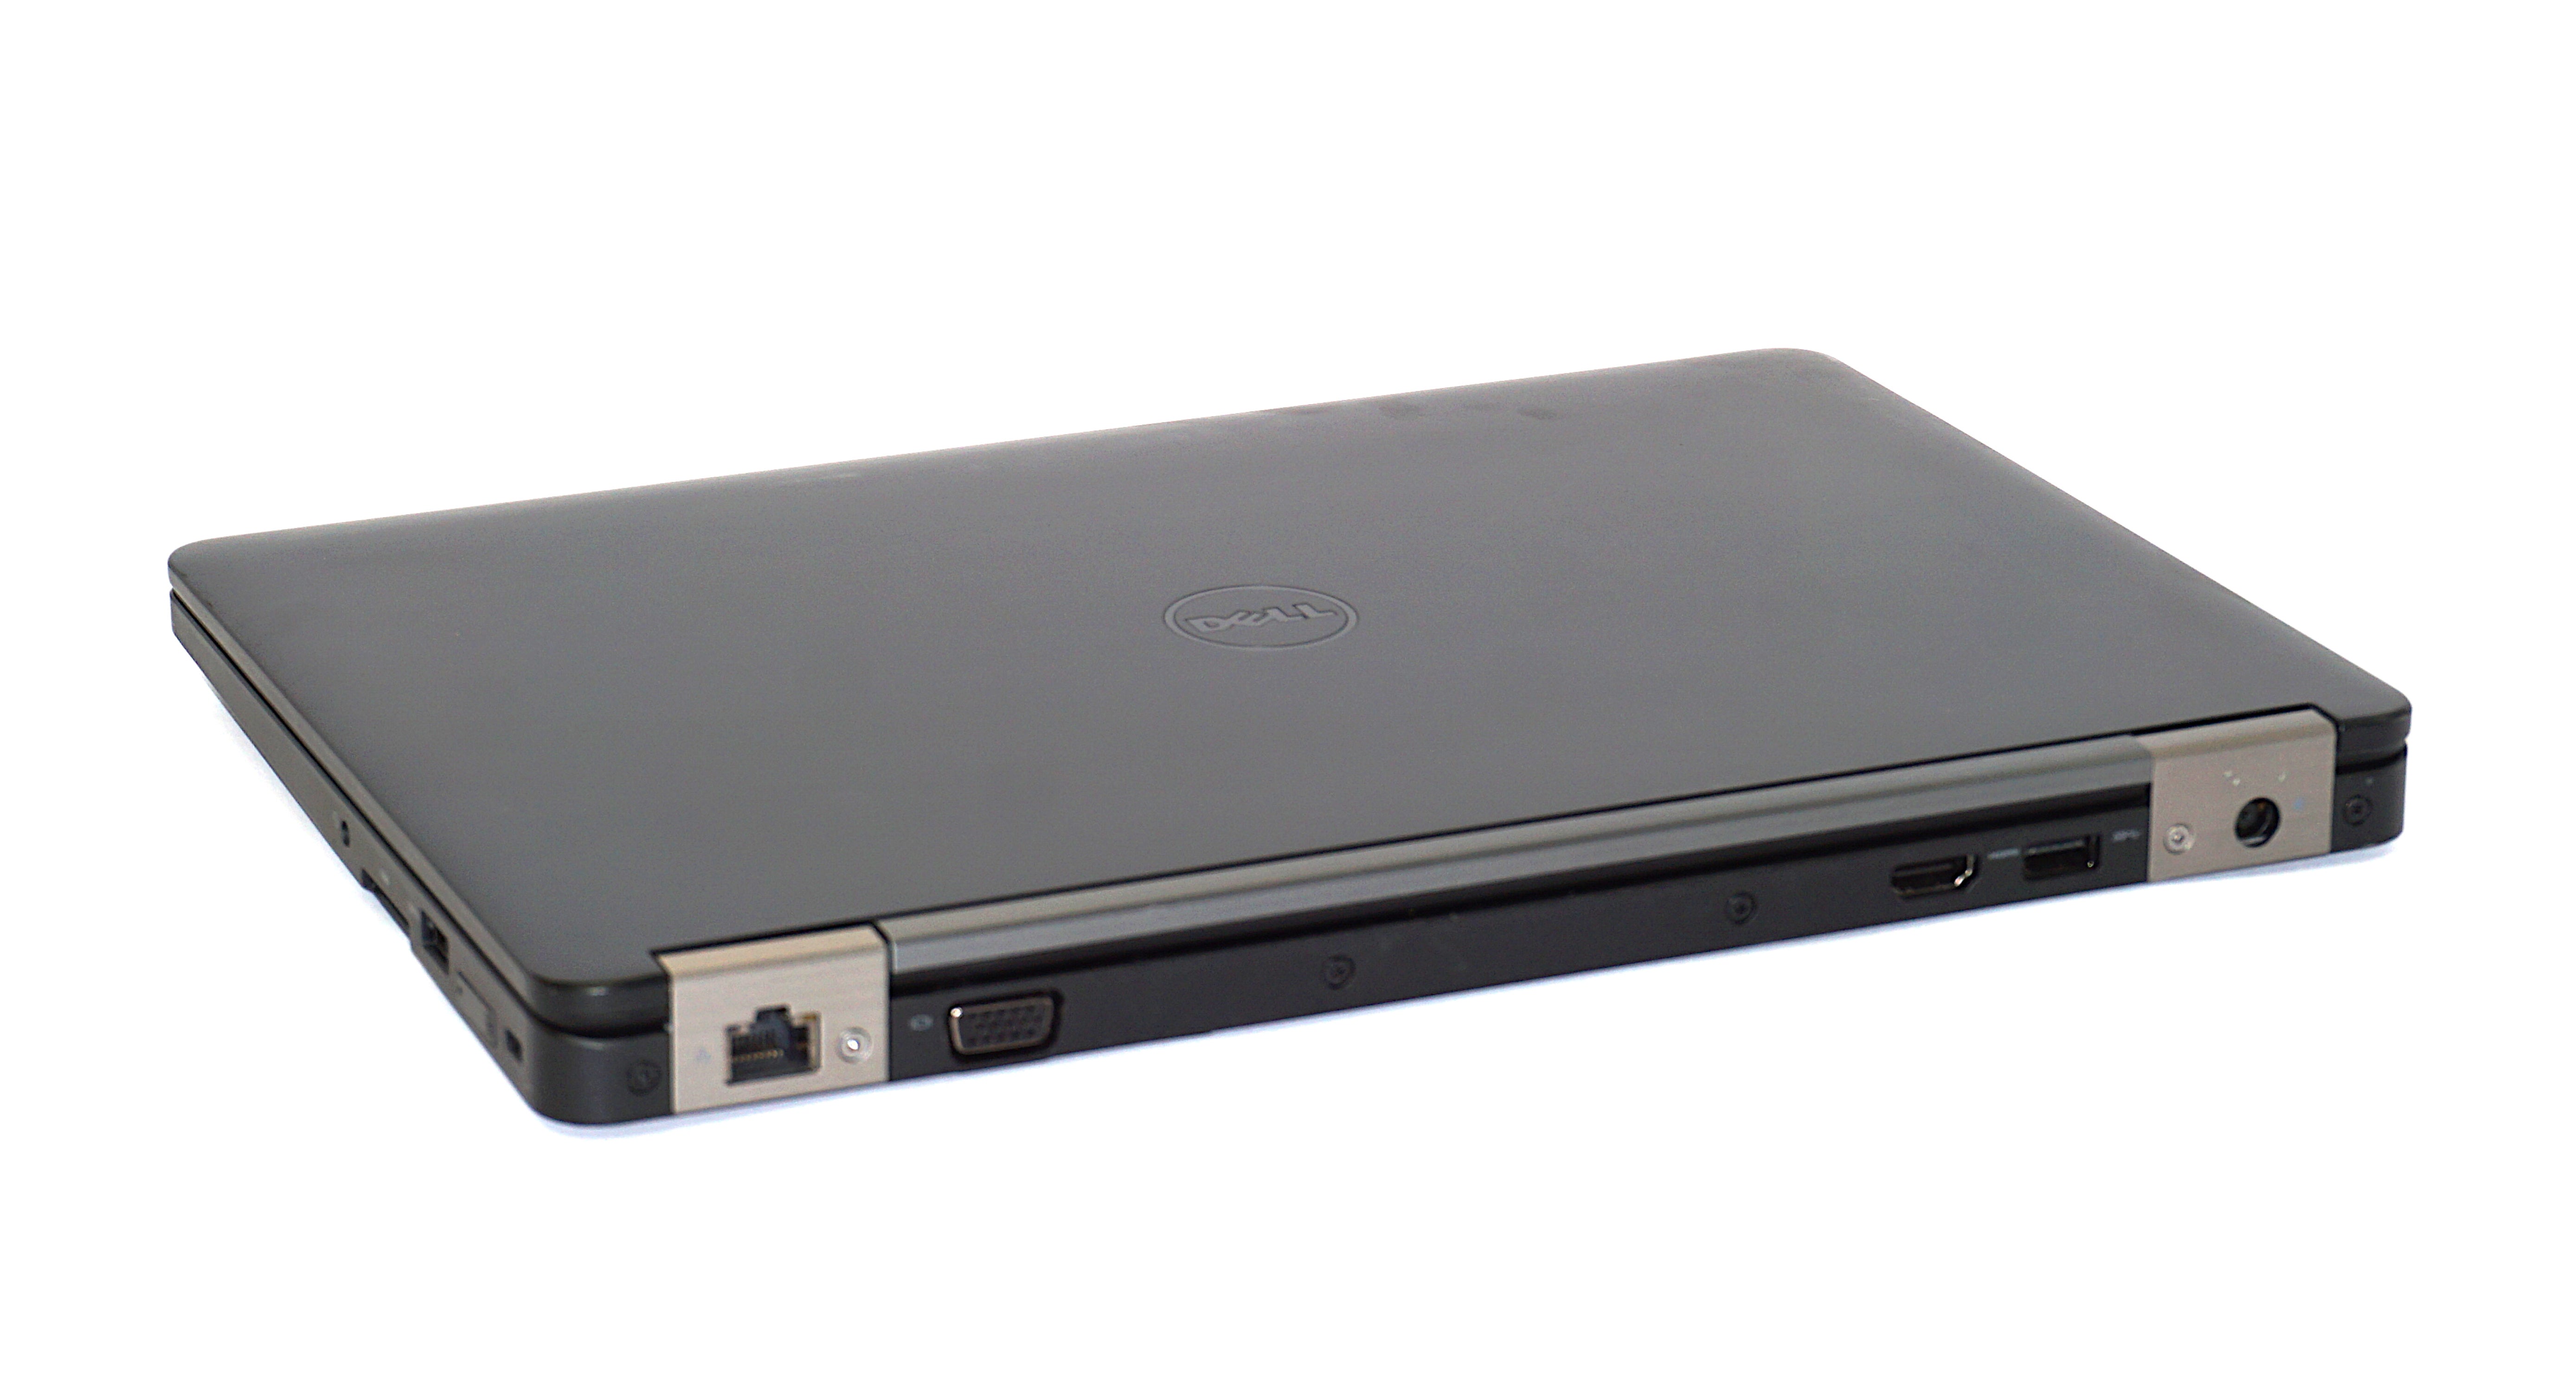 Dell Latitude E5270 Laptop, 12.5" i3 6th Gen, 8GB RAM, 256GB SSD